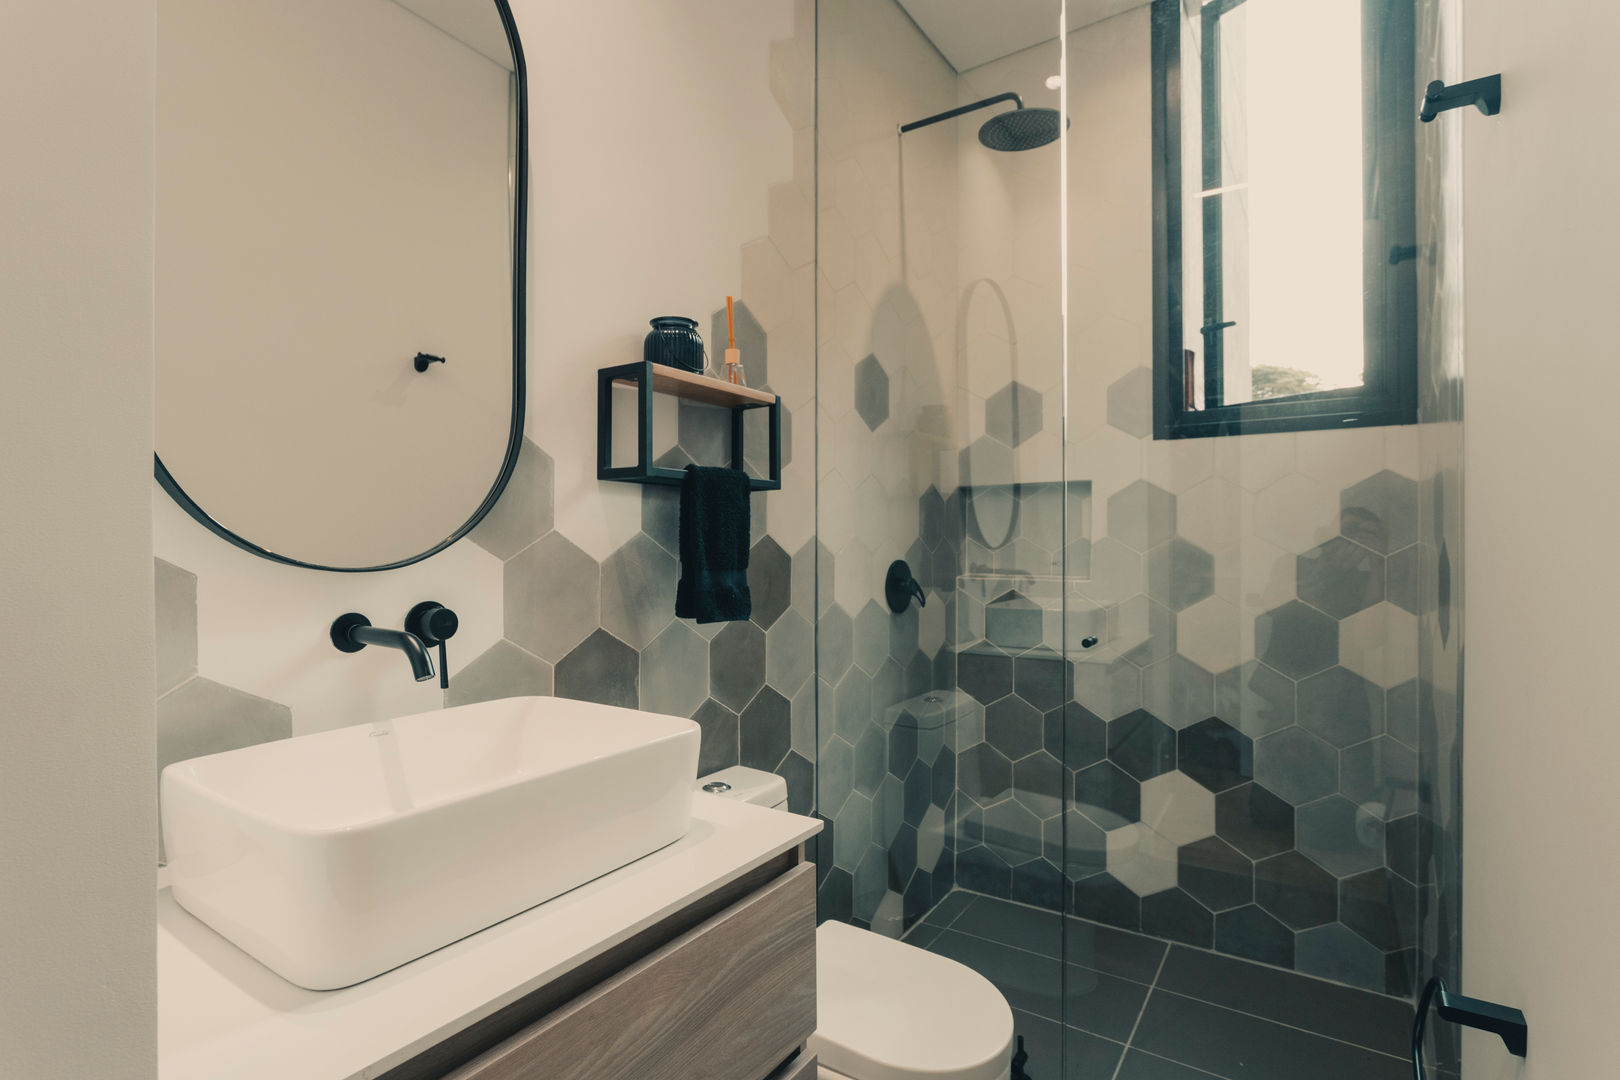 Baño habitacion numero 2 Adrede Arquitectura Baños de estilo moderno Cerámico Blanco baño moderno, arquitectura, construccion